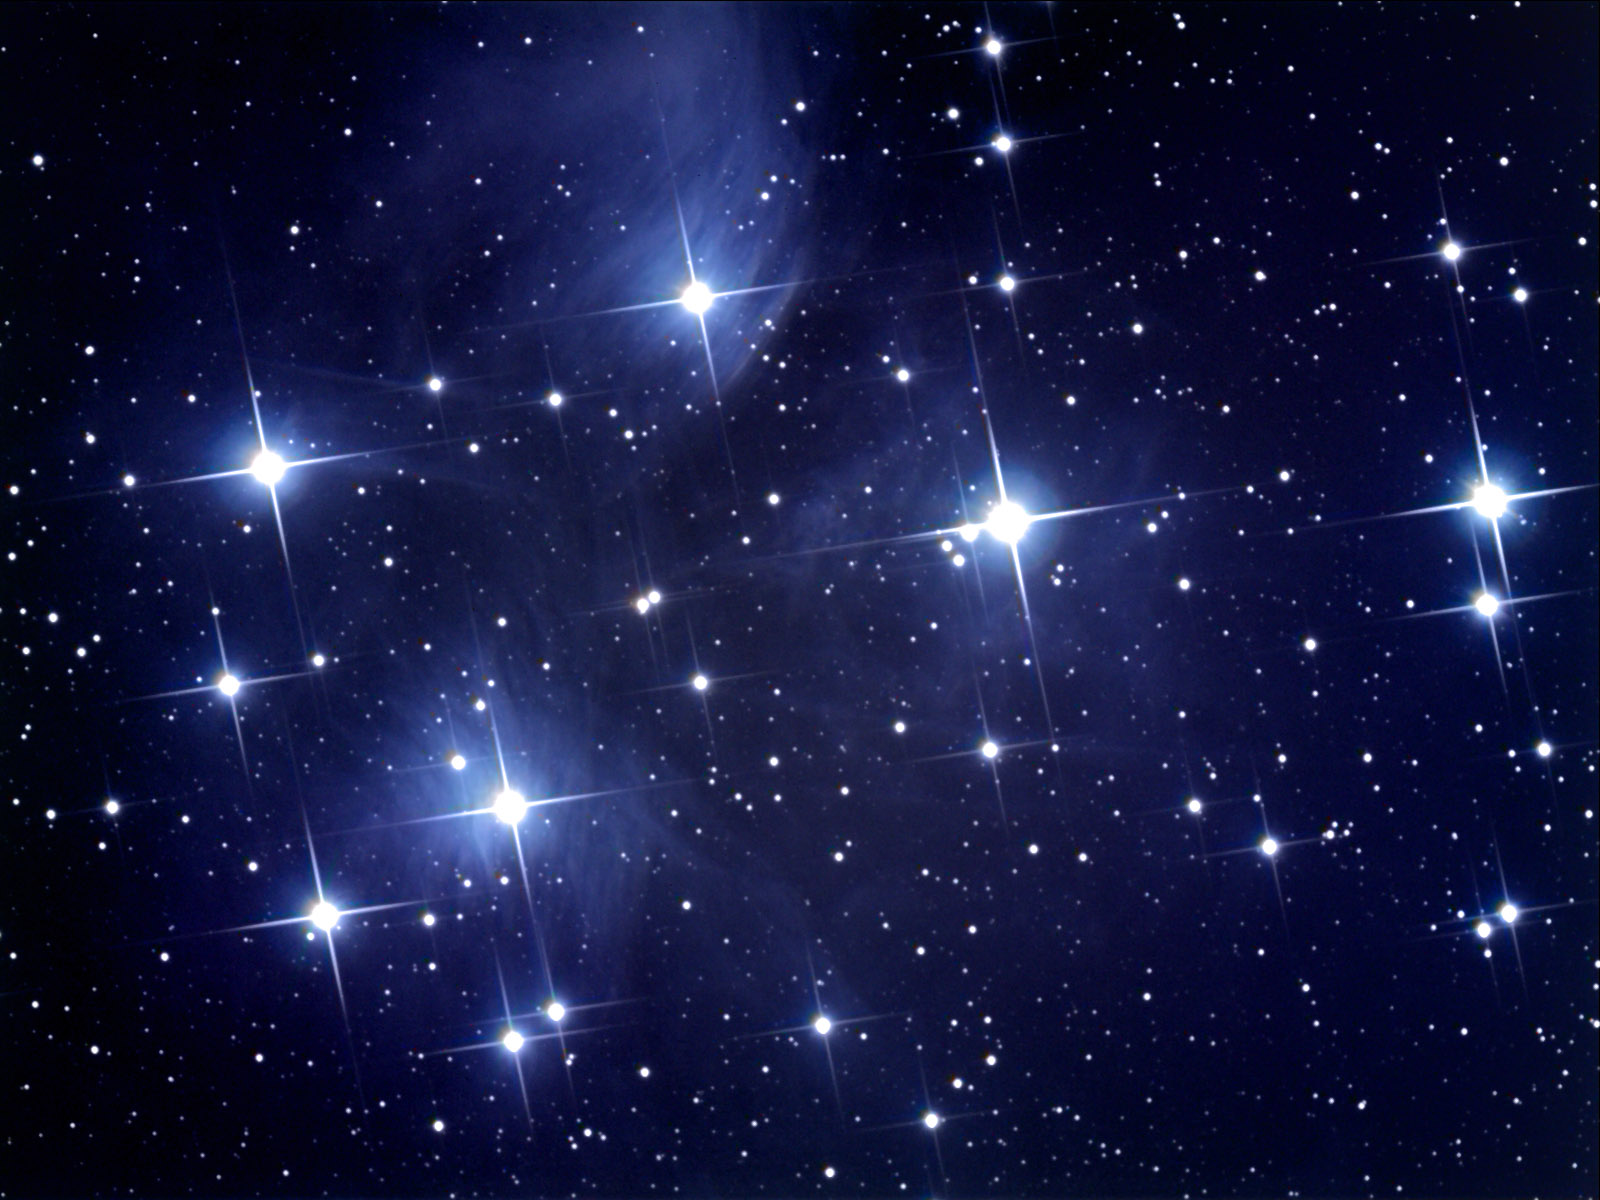 M45 The Pleiades December Fsq106 St2000xm Lrgb